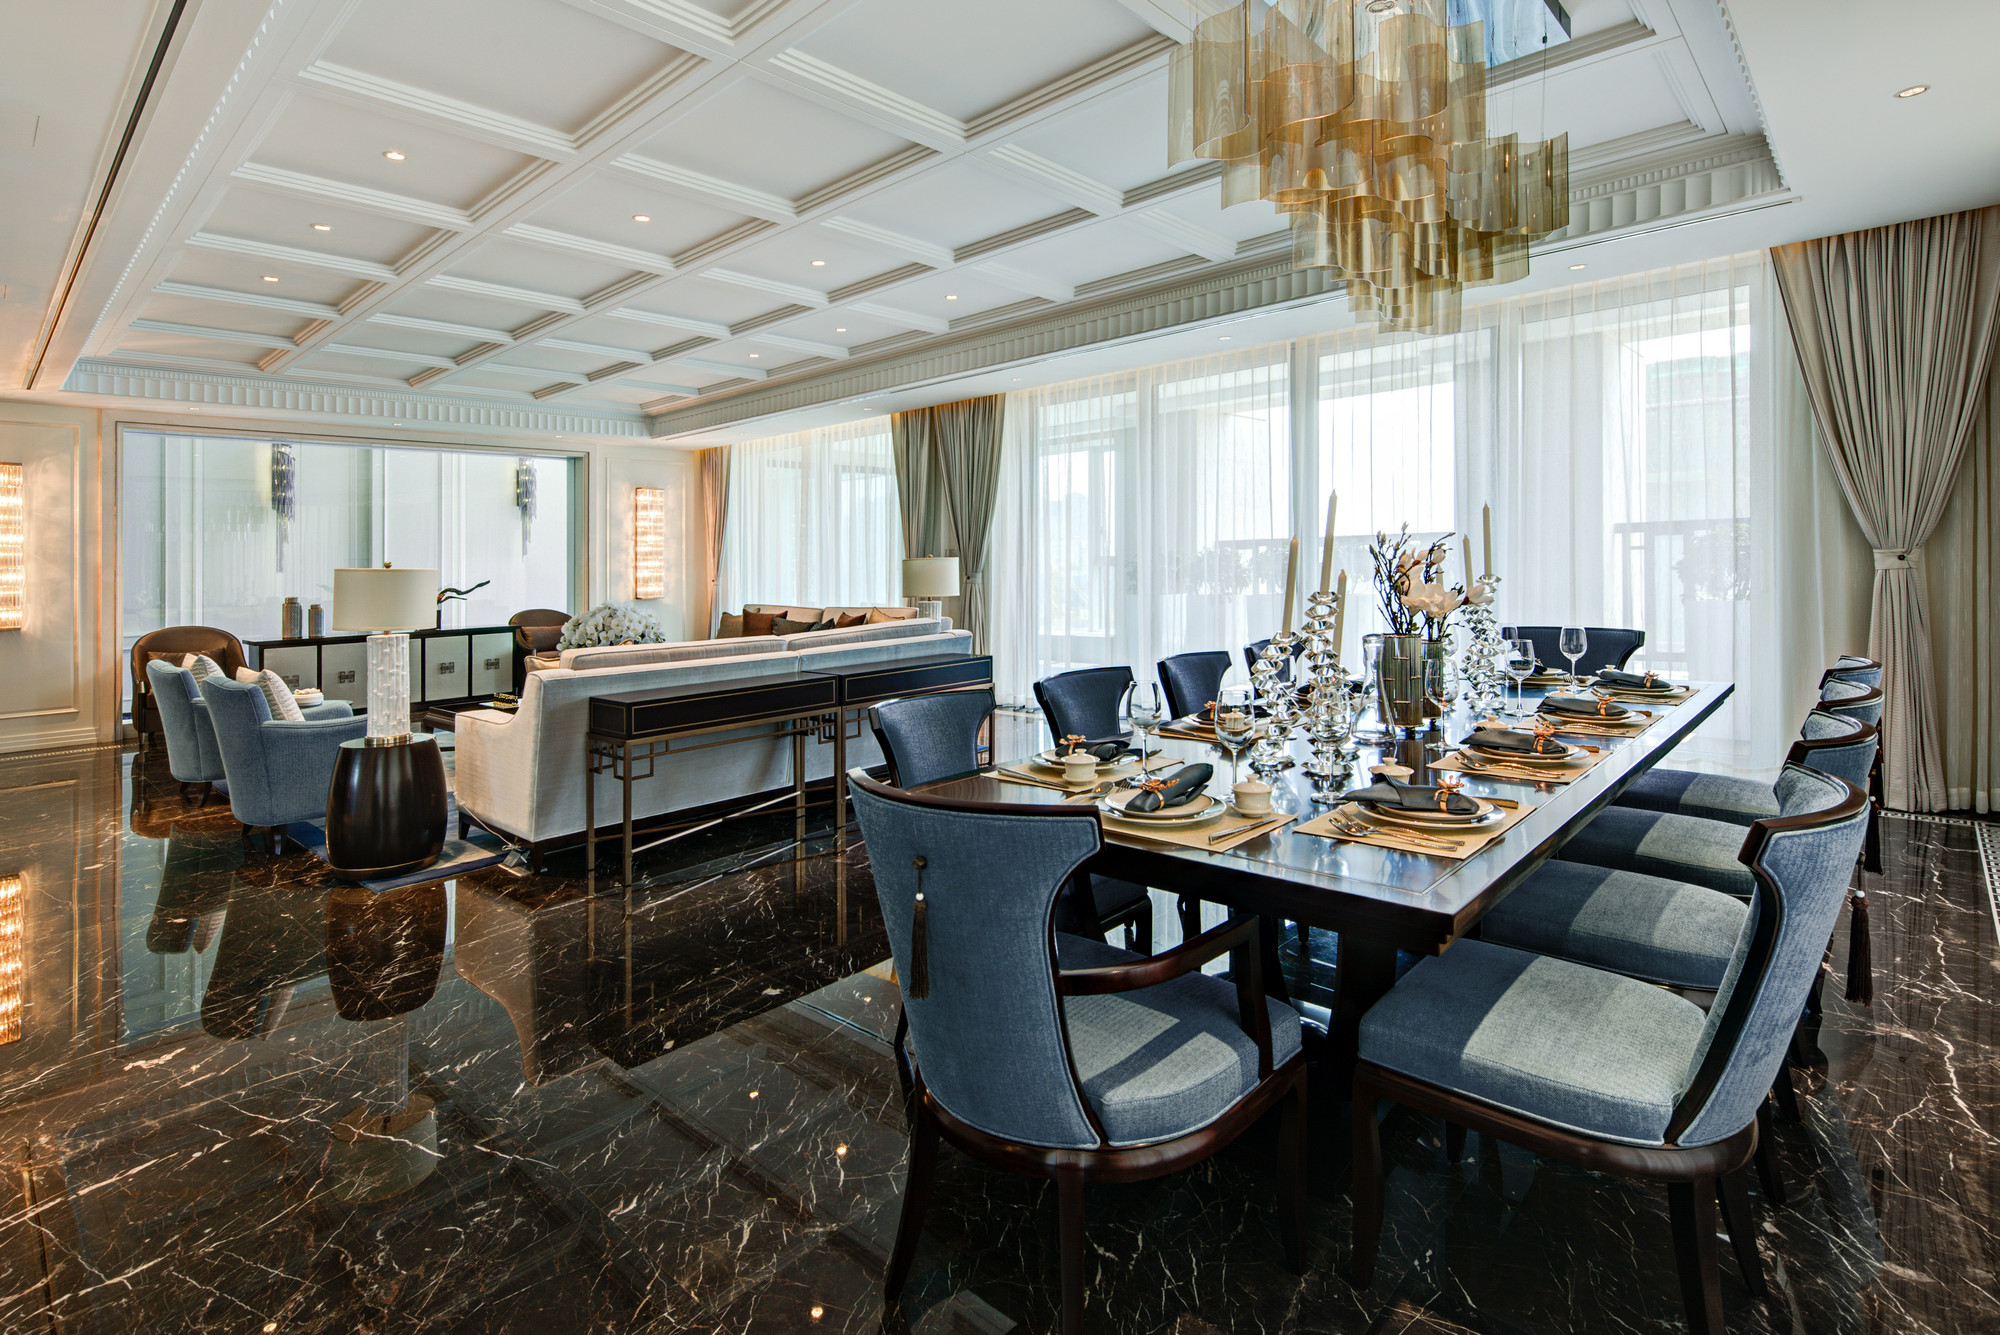 餐厅与客厅相连，蓝色餐椅与木色餐桌搭配巧妙，餐具选取跳跃的金色点缀其中，极富低奢时尚感。